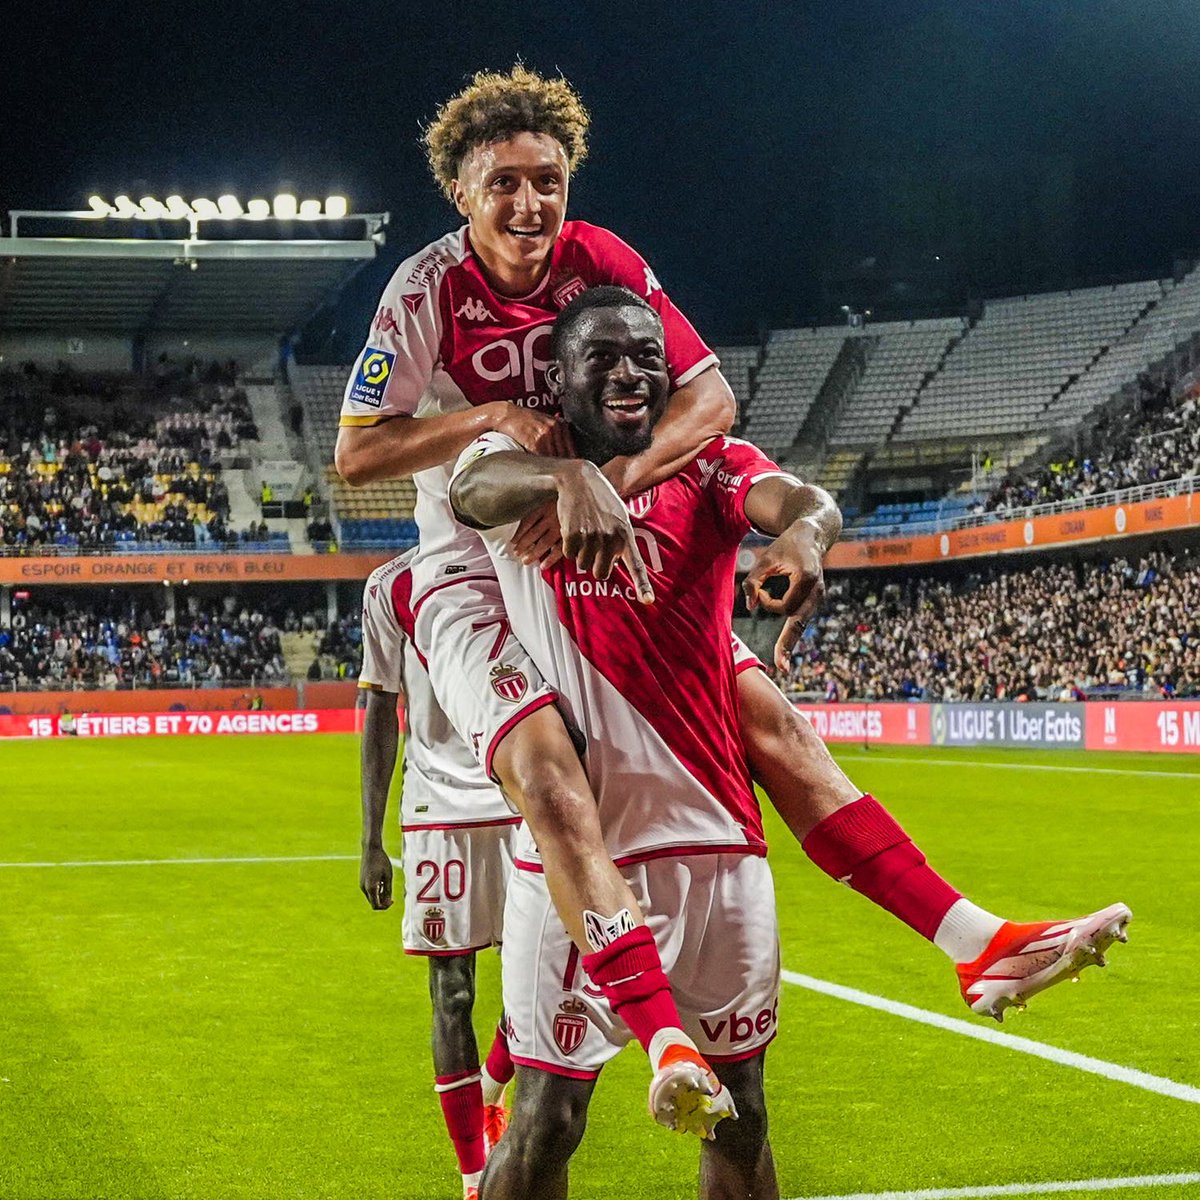 🇲🇨 O Monaco se classificou para a Champions League.

É a primeira vez que o clube vai jogar a UCL desde 2018/19. 

Belo feito de Adolf Hütter e seu time